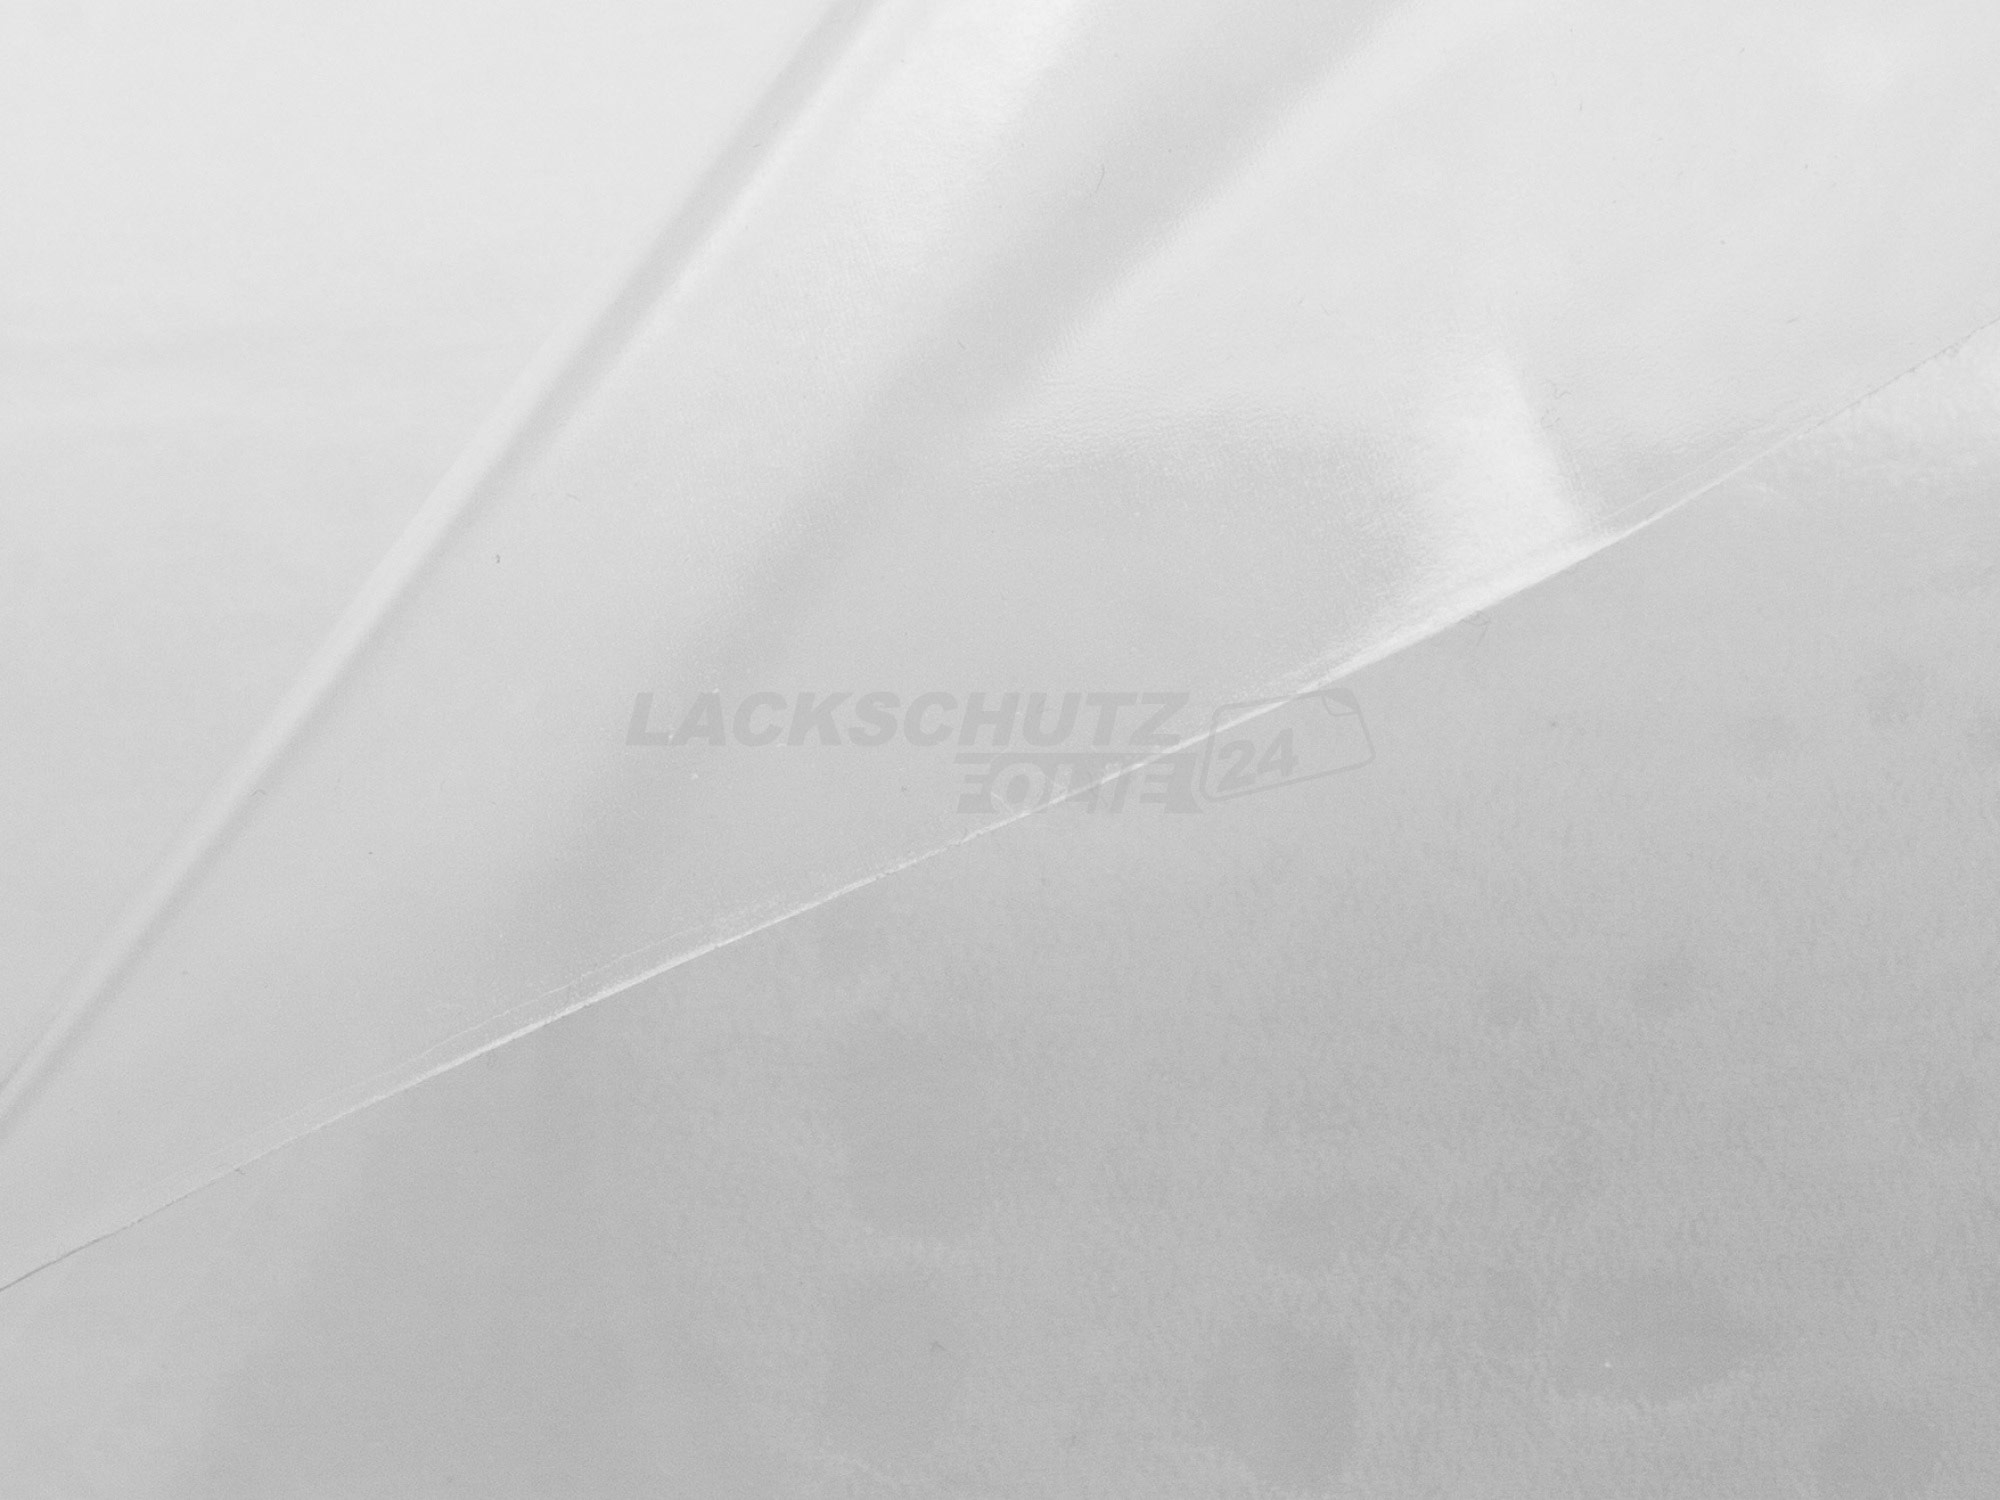 Ladekantenschutzfolie - Transparent Glatt Hochglänzend 240 µm stark für Skoda Octavia Limousine (III) Typ 5E, Facelift, BJ 11/2016-2020